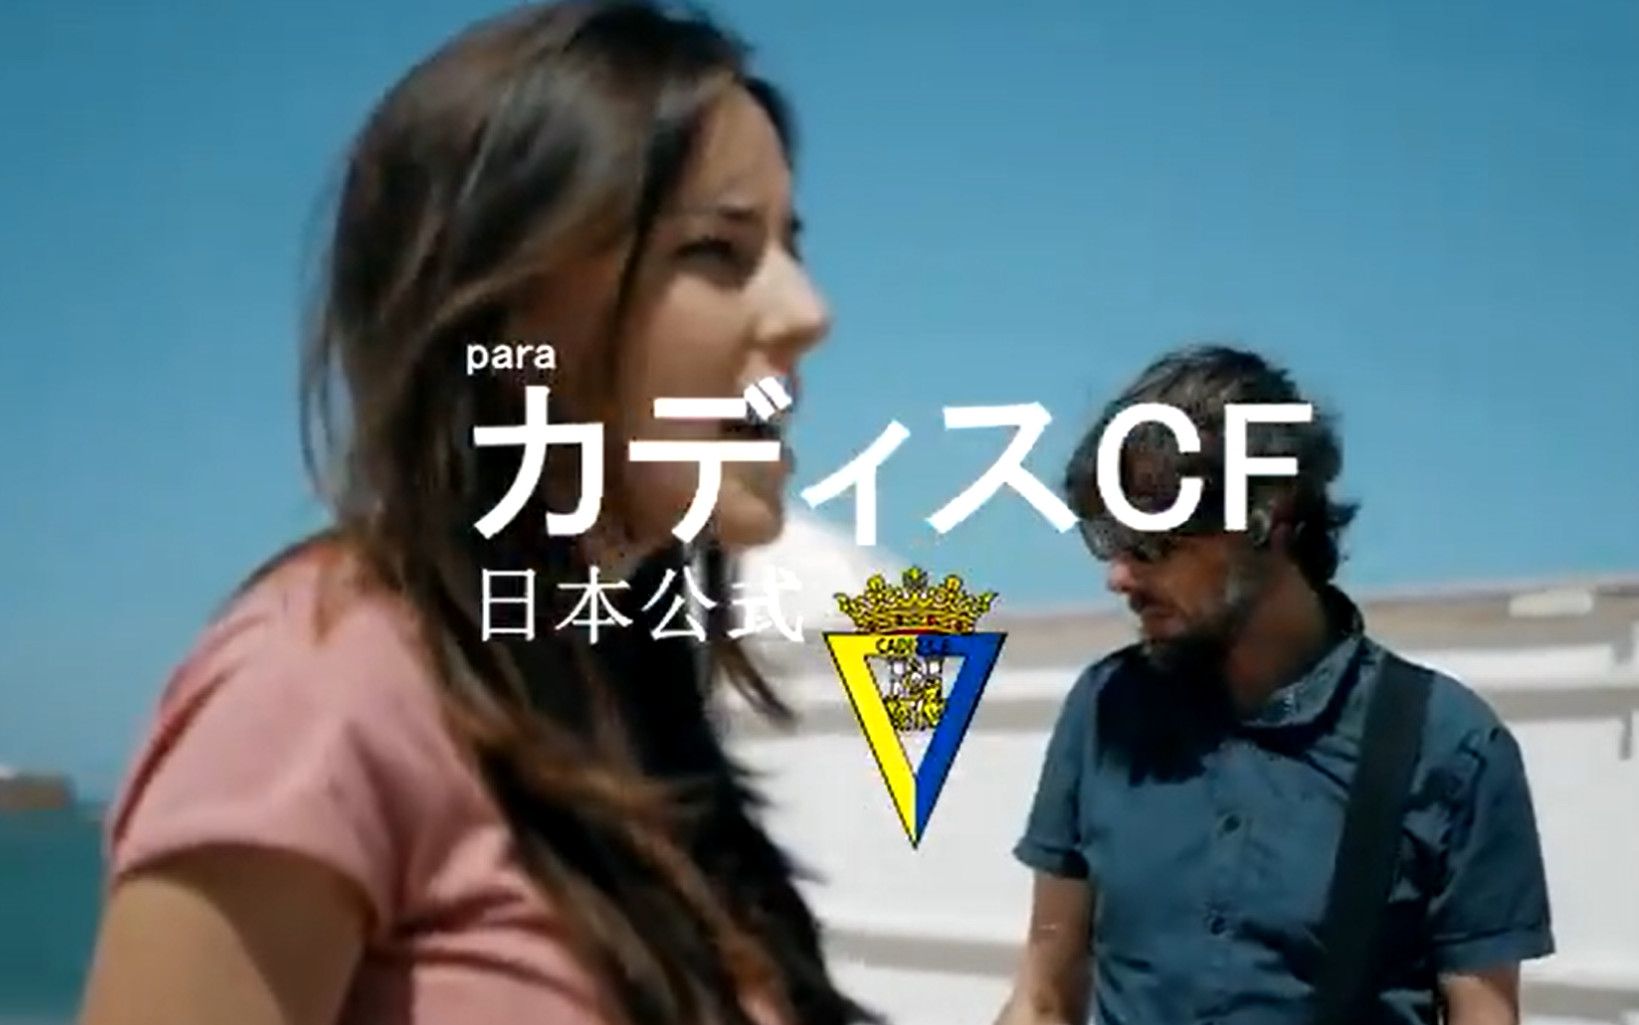 El himno del Cádiz en japonés.